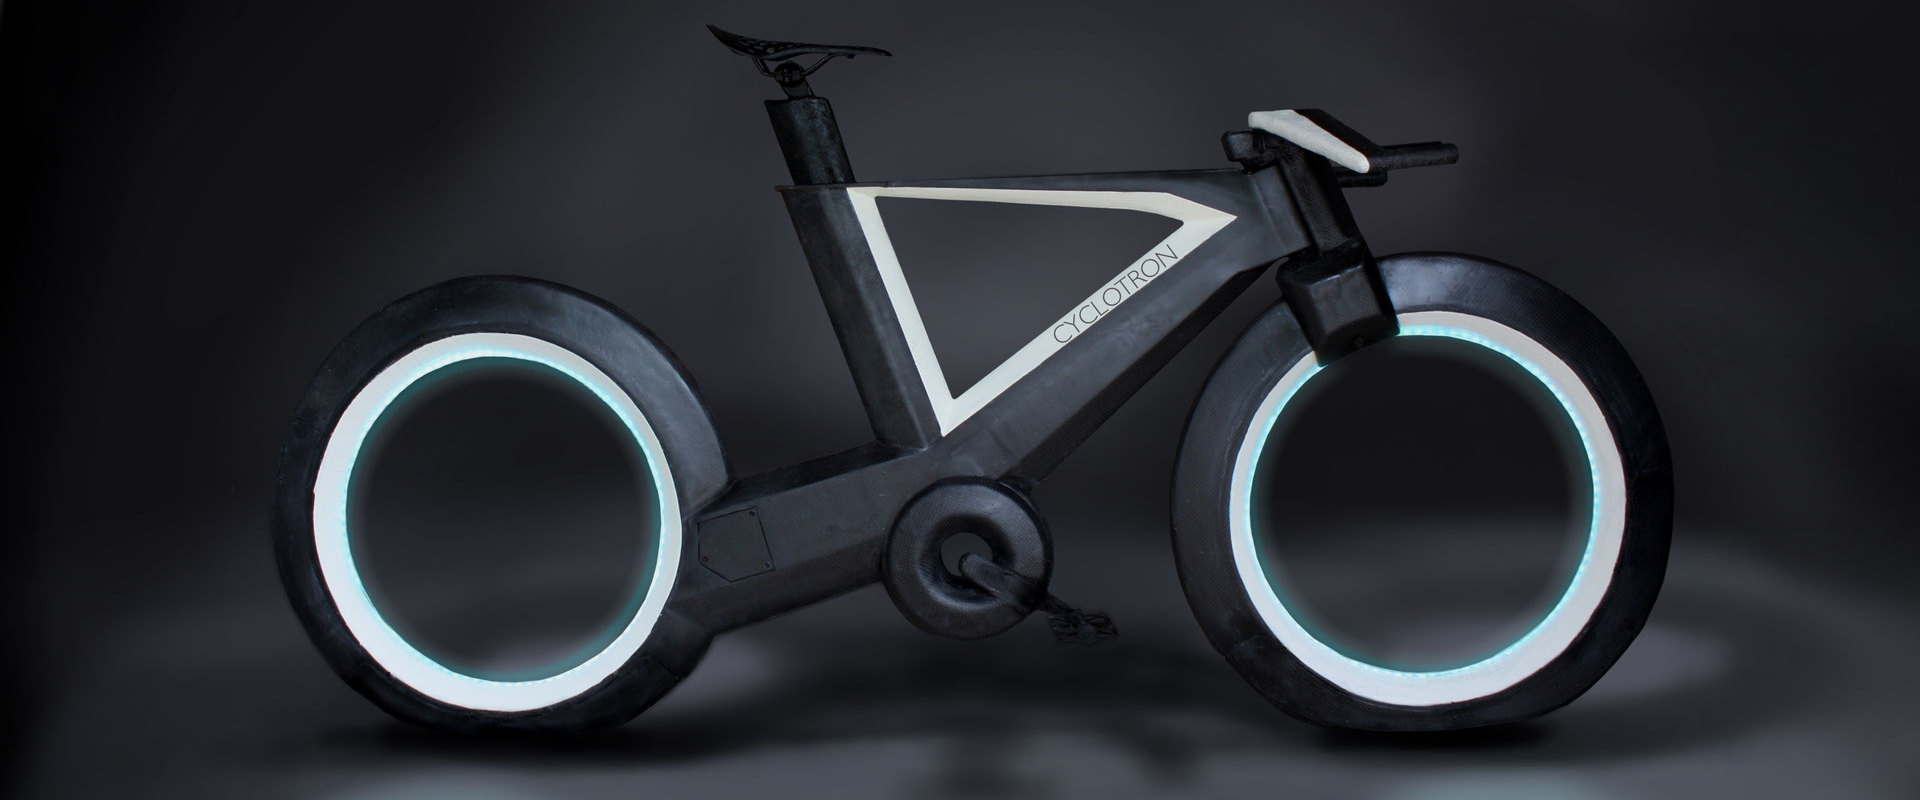 La bicicleta del futuro